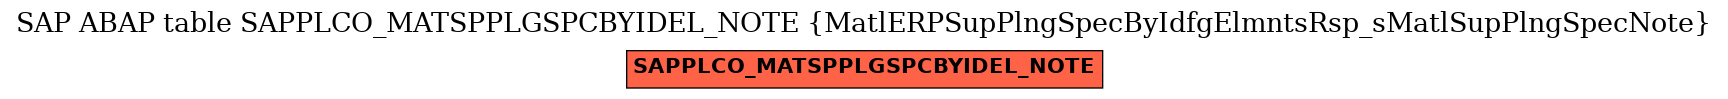 E-R Diagram for table SAPPLCO_MATSPPLGSPCBYIDEL_NOTE (MatlERPSupPlngSpecByIdfgElmntsRsp_sMatlSupPlngSpecNote)